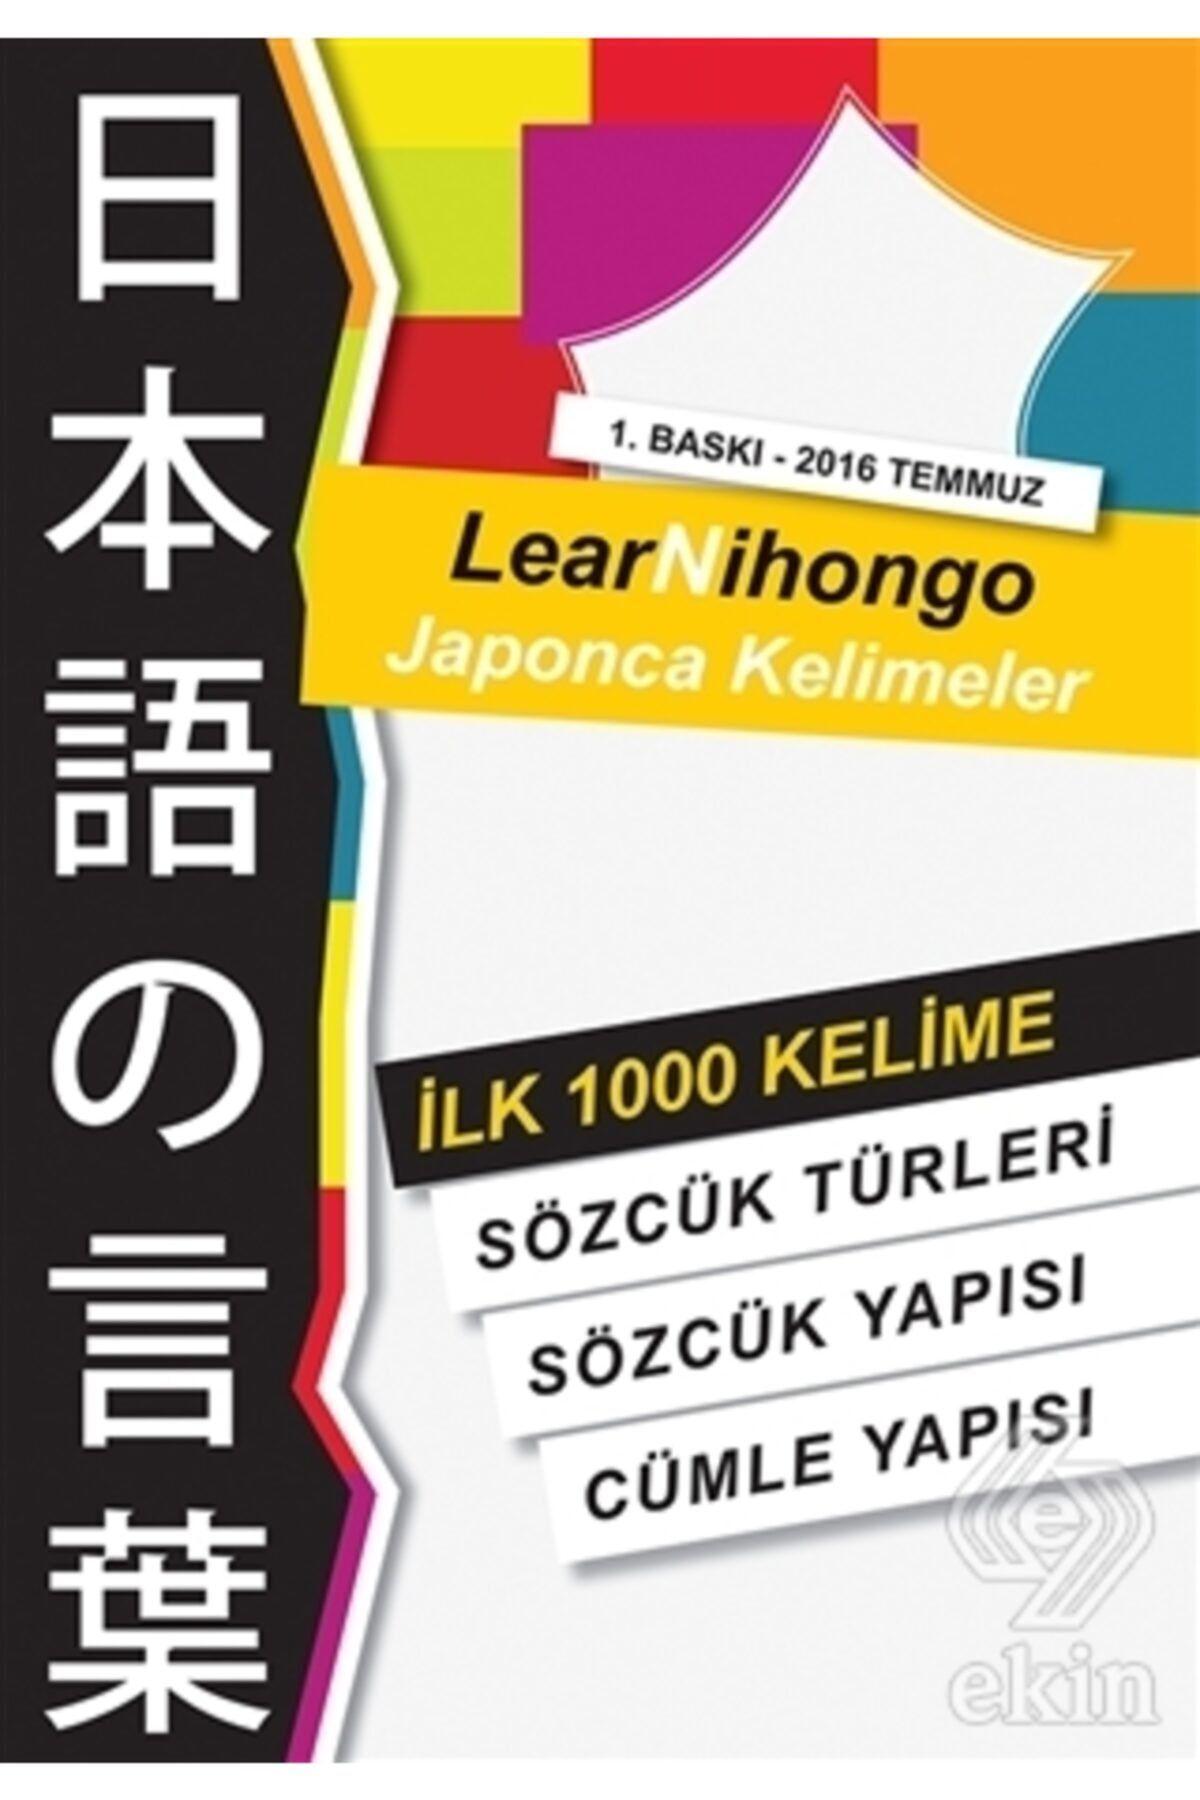 Cinius Yayınları Lear Nihongo Japonca Kelimeler Ilk 1000 Kelime